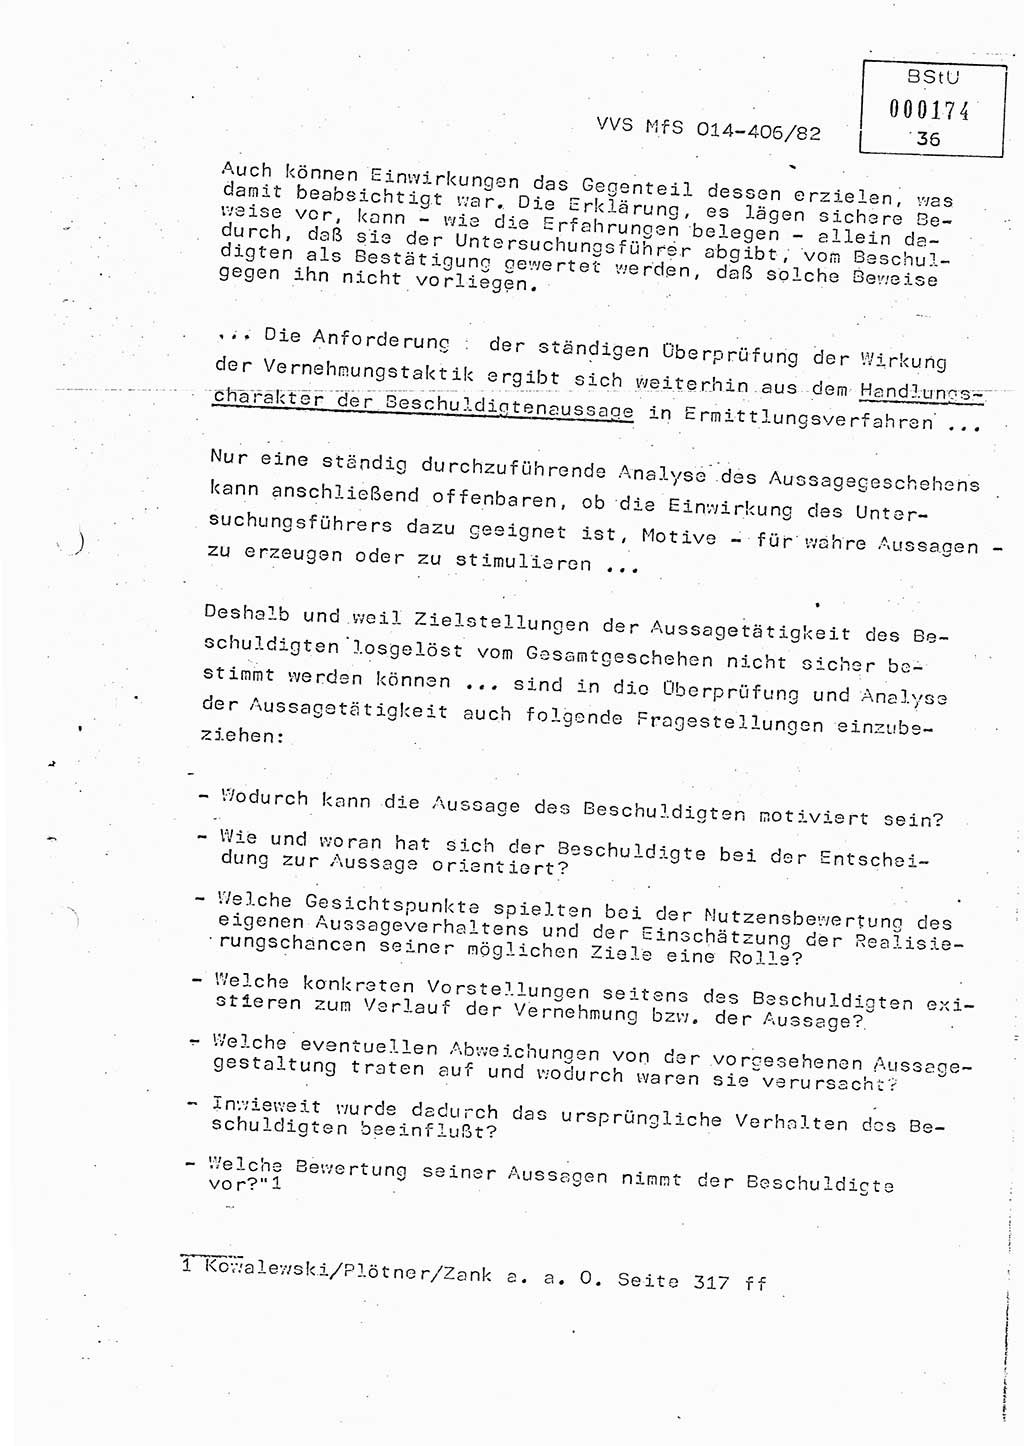 Lektion Ministerium für Staatssicherheit (MfS) [Deutsche Demokratische Republik (DDR)], Hauptabteilung (HA) Ⅸ, Vertrauliche Verschlußsache (VVS) o014-406/82, Berlin 1982, Seite 36 (Lekt. MfS DDR HA Ⅸ VVS o014-406/82 1982, S. 36)